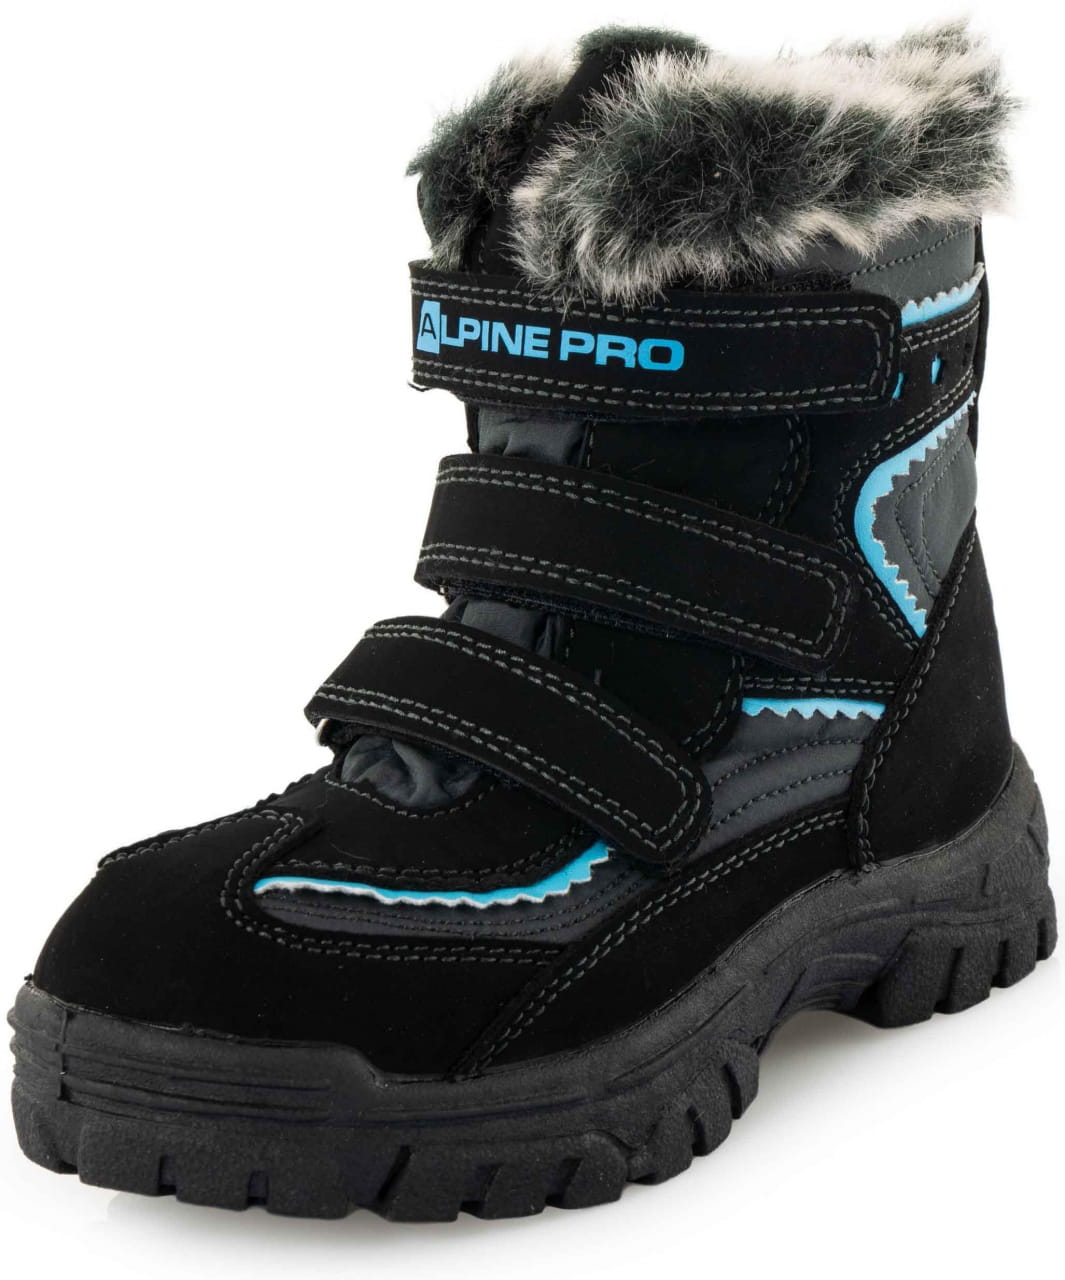 Zimska obutev Alpine Pro Ento